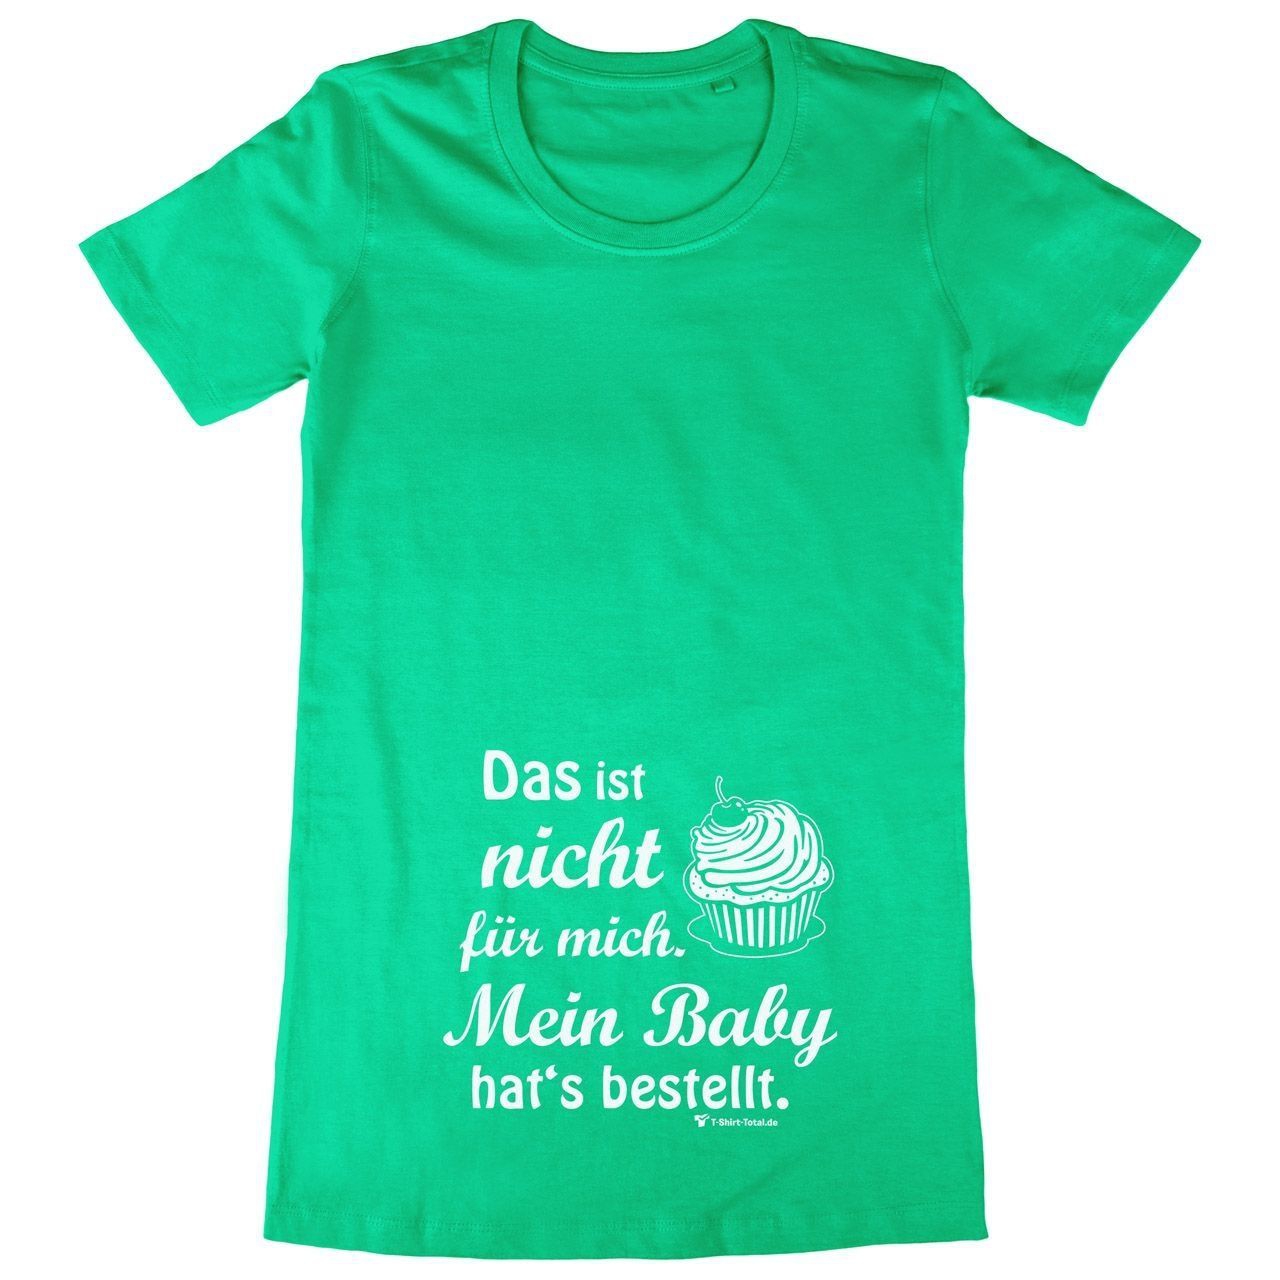 Baby hats bestellt Woman Long Shirt grün 2-Extra Large